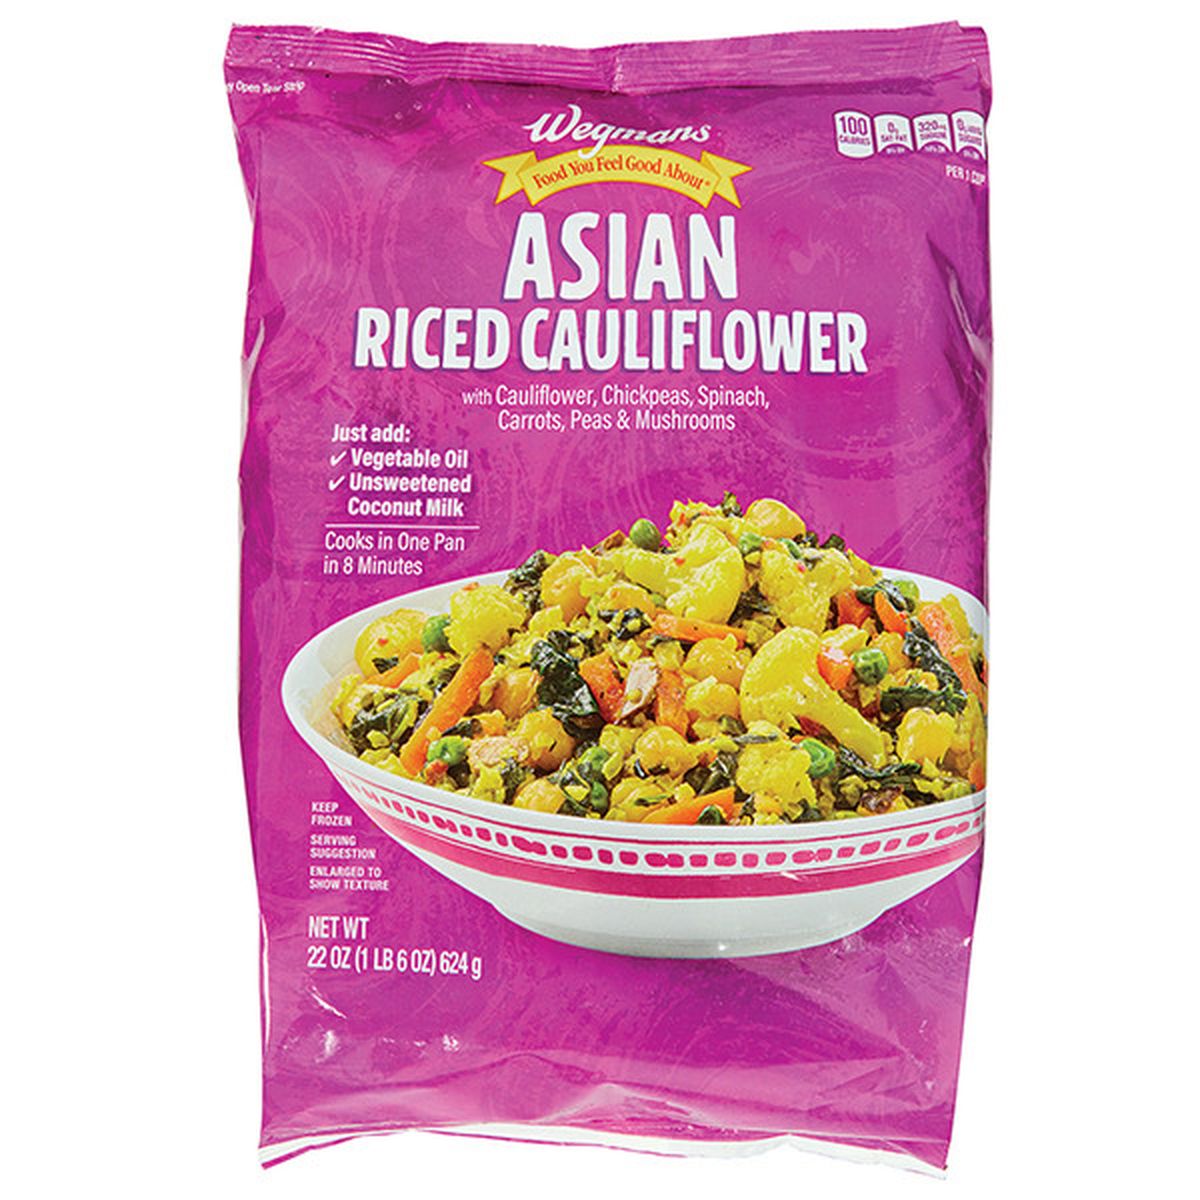 Calories in Wegmans Asian Riced Cauliflower